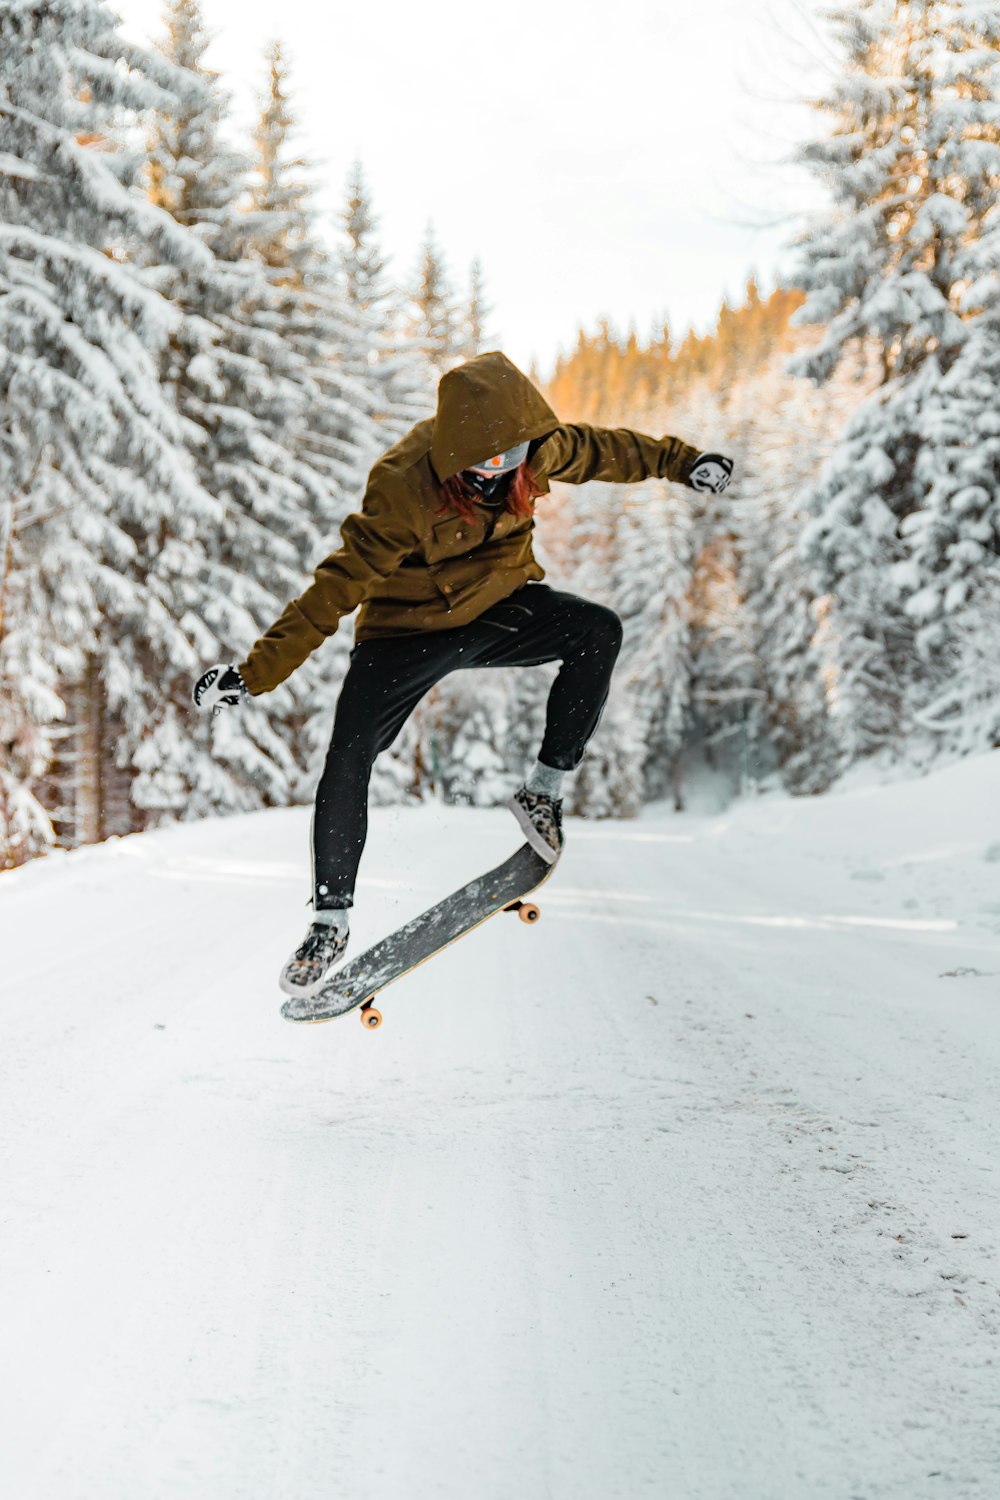 homem fazendo truques em um skate no ar durante o inverno